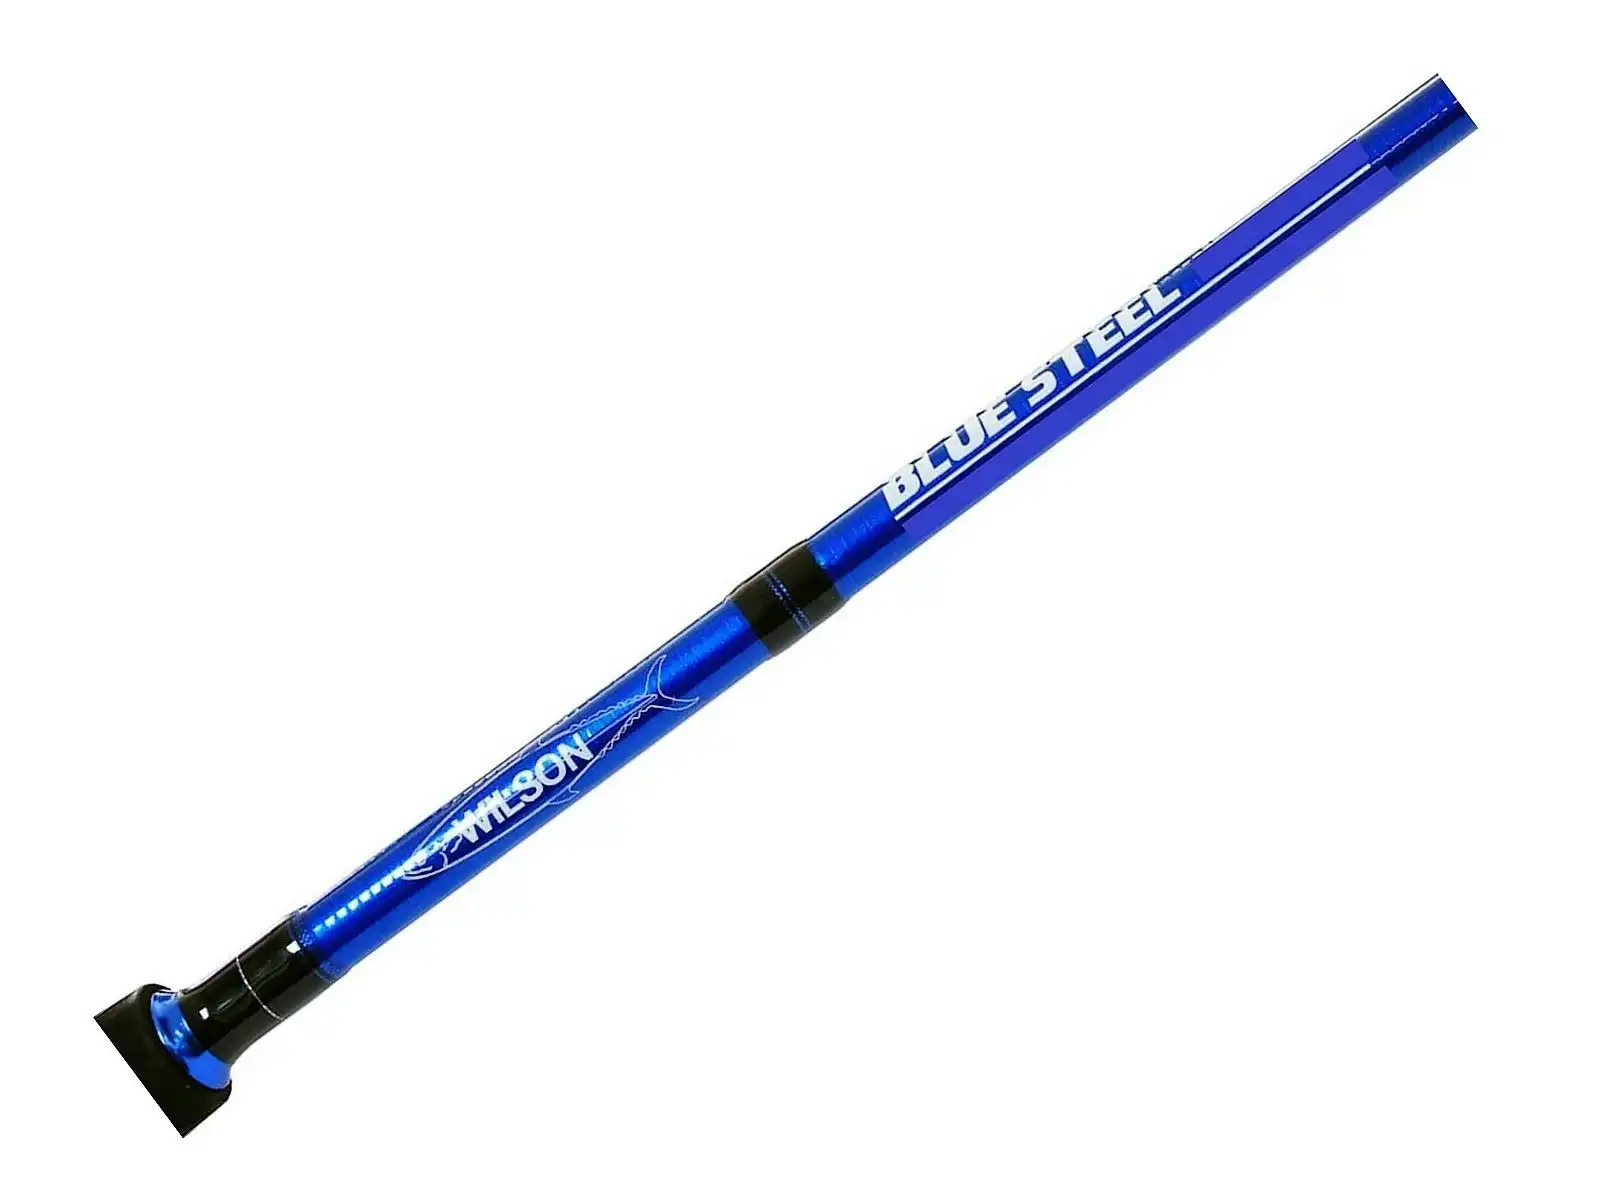 Wilson Blue Steel 2 Piece Fishing Rod - Metallic Blue Spin Rod